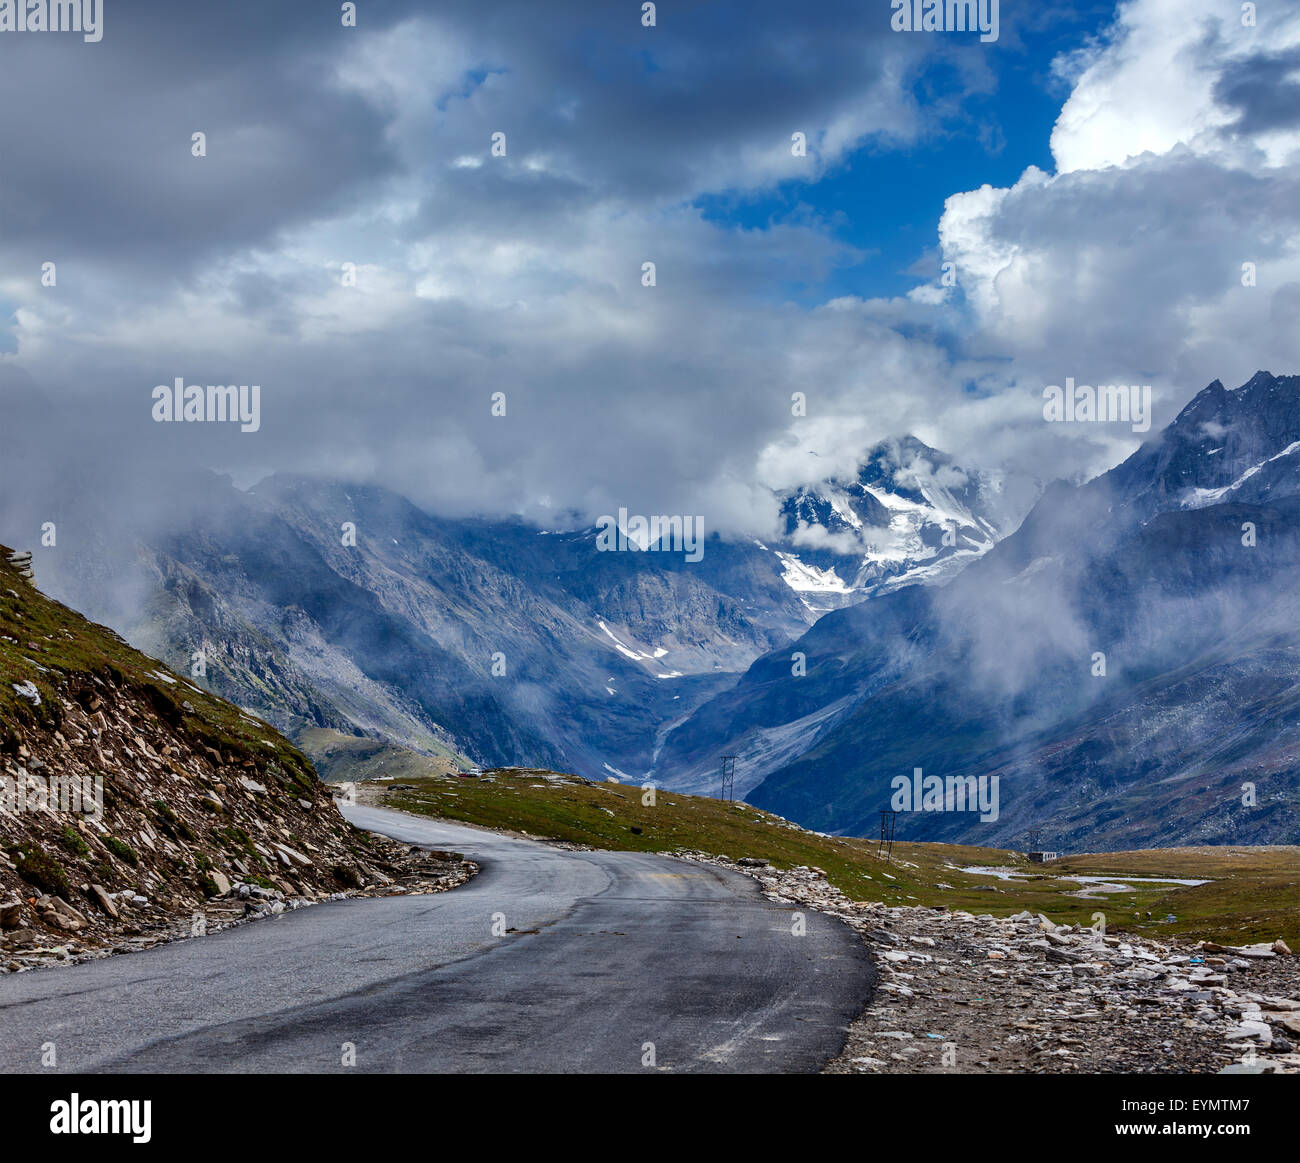 Road in Himalayas. Rohtang La pass, Himachal Pradesh, India Stock Photo